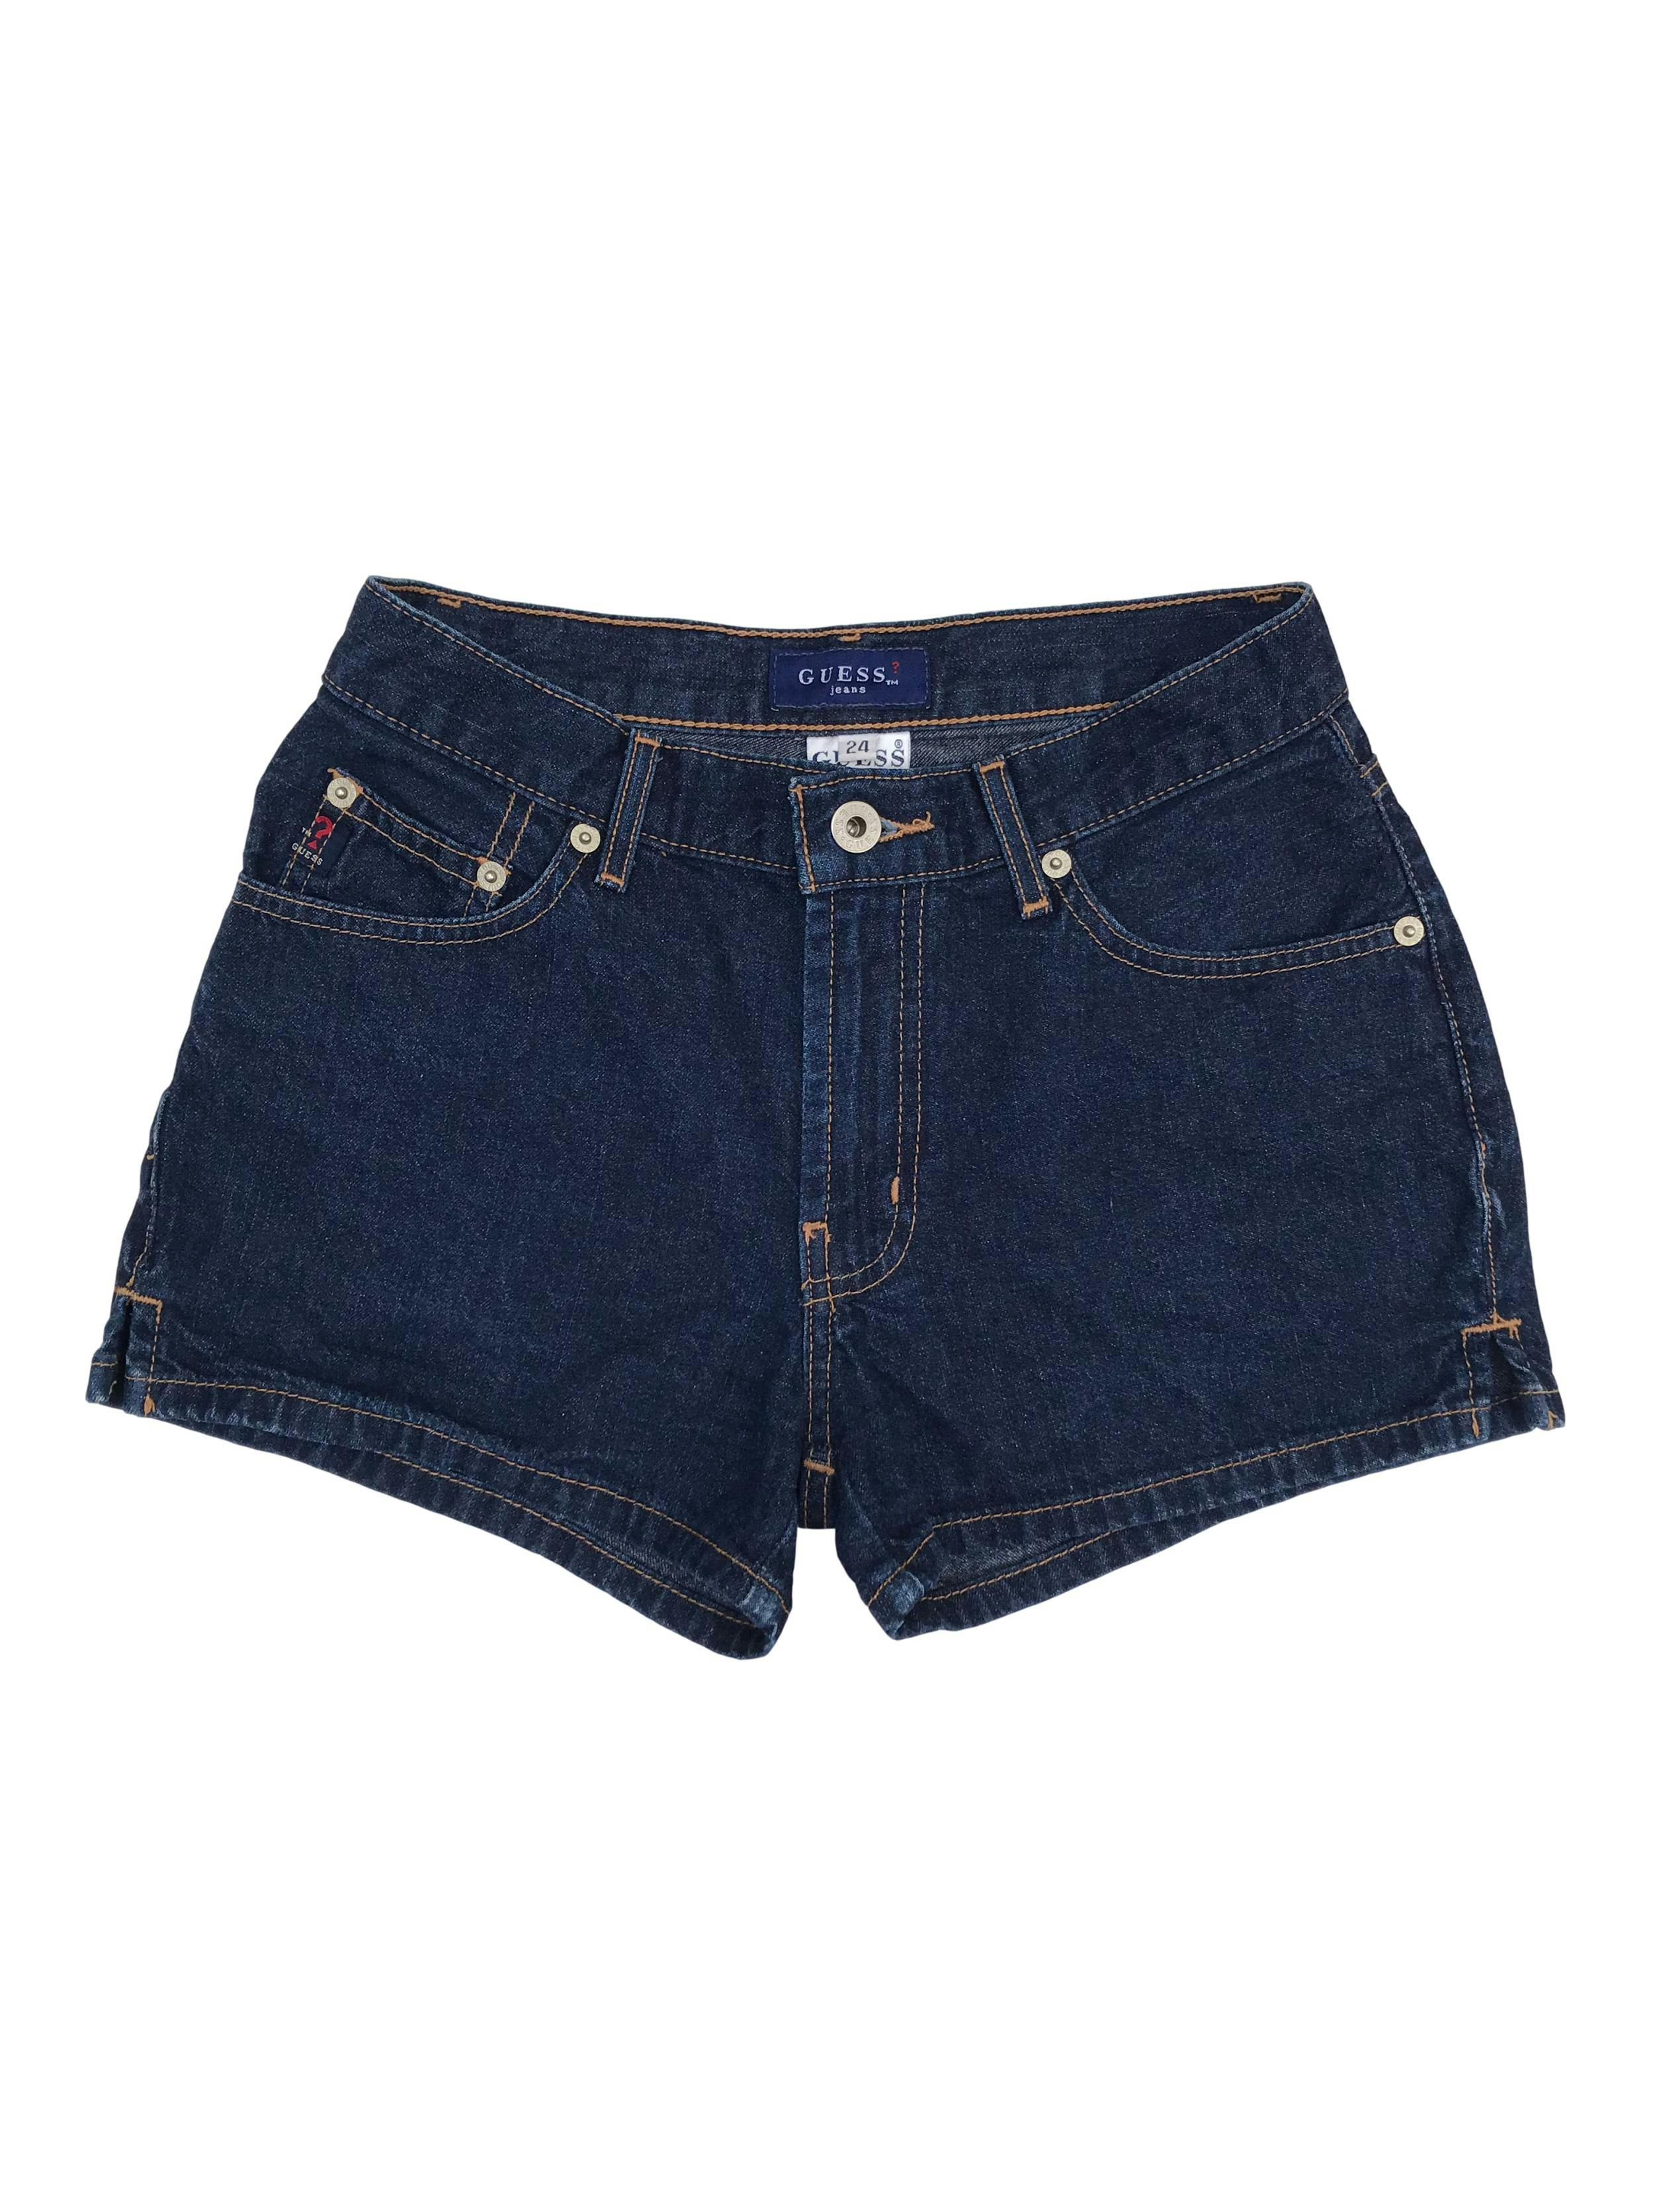 Short vintage Guess de jean azul 100% algodón. Cintura 66cm Largo 30cm